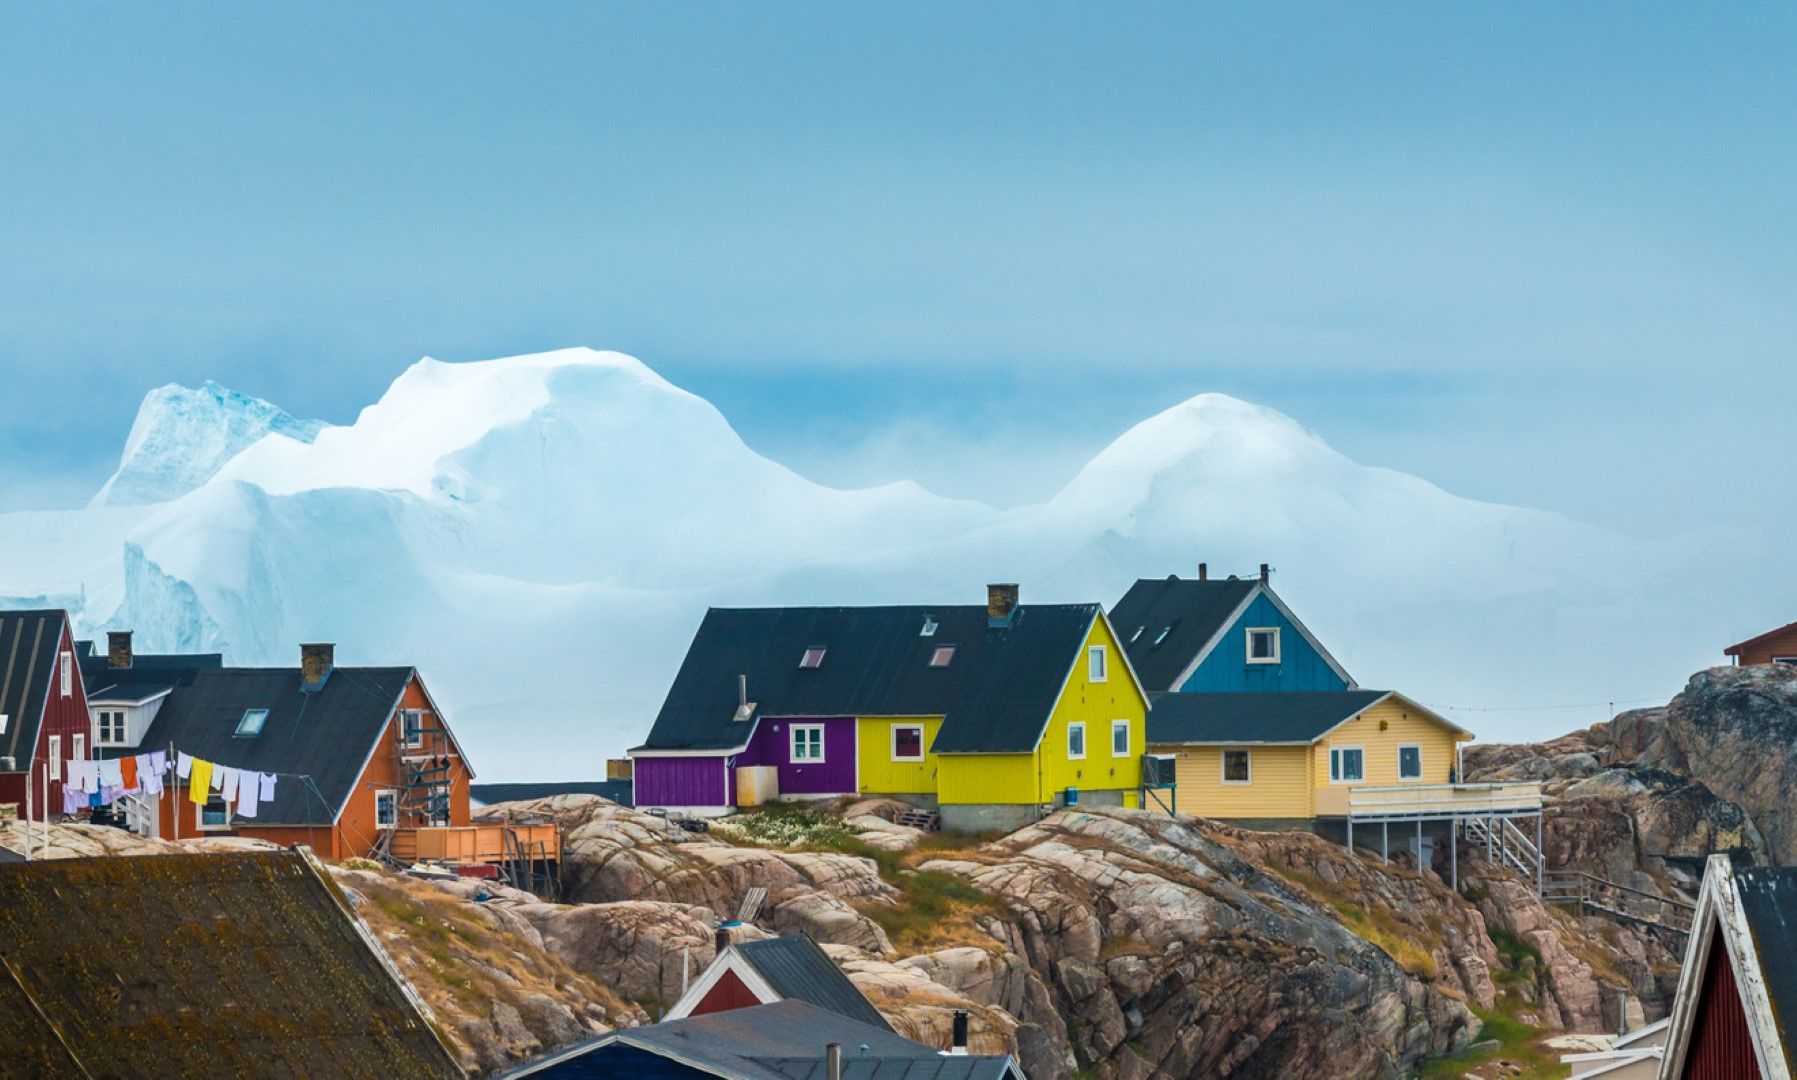 При топенето си гренландският лед замърсява с живак океана